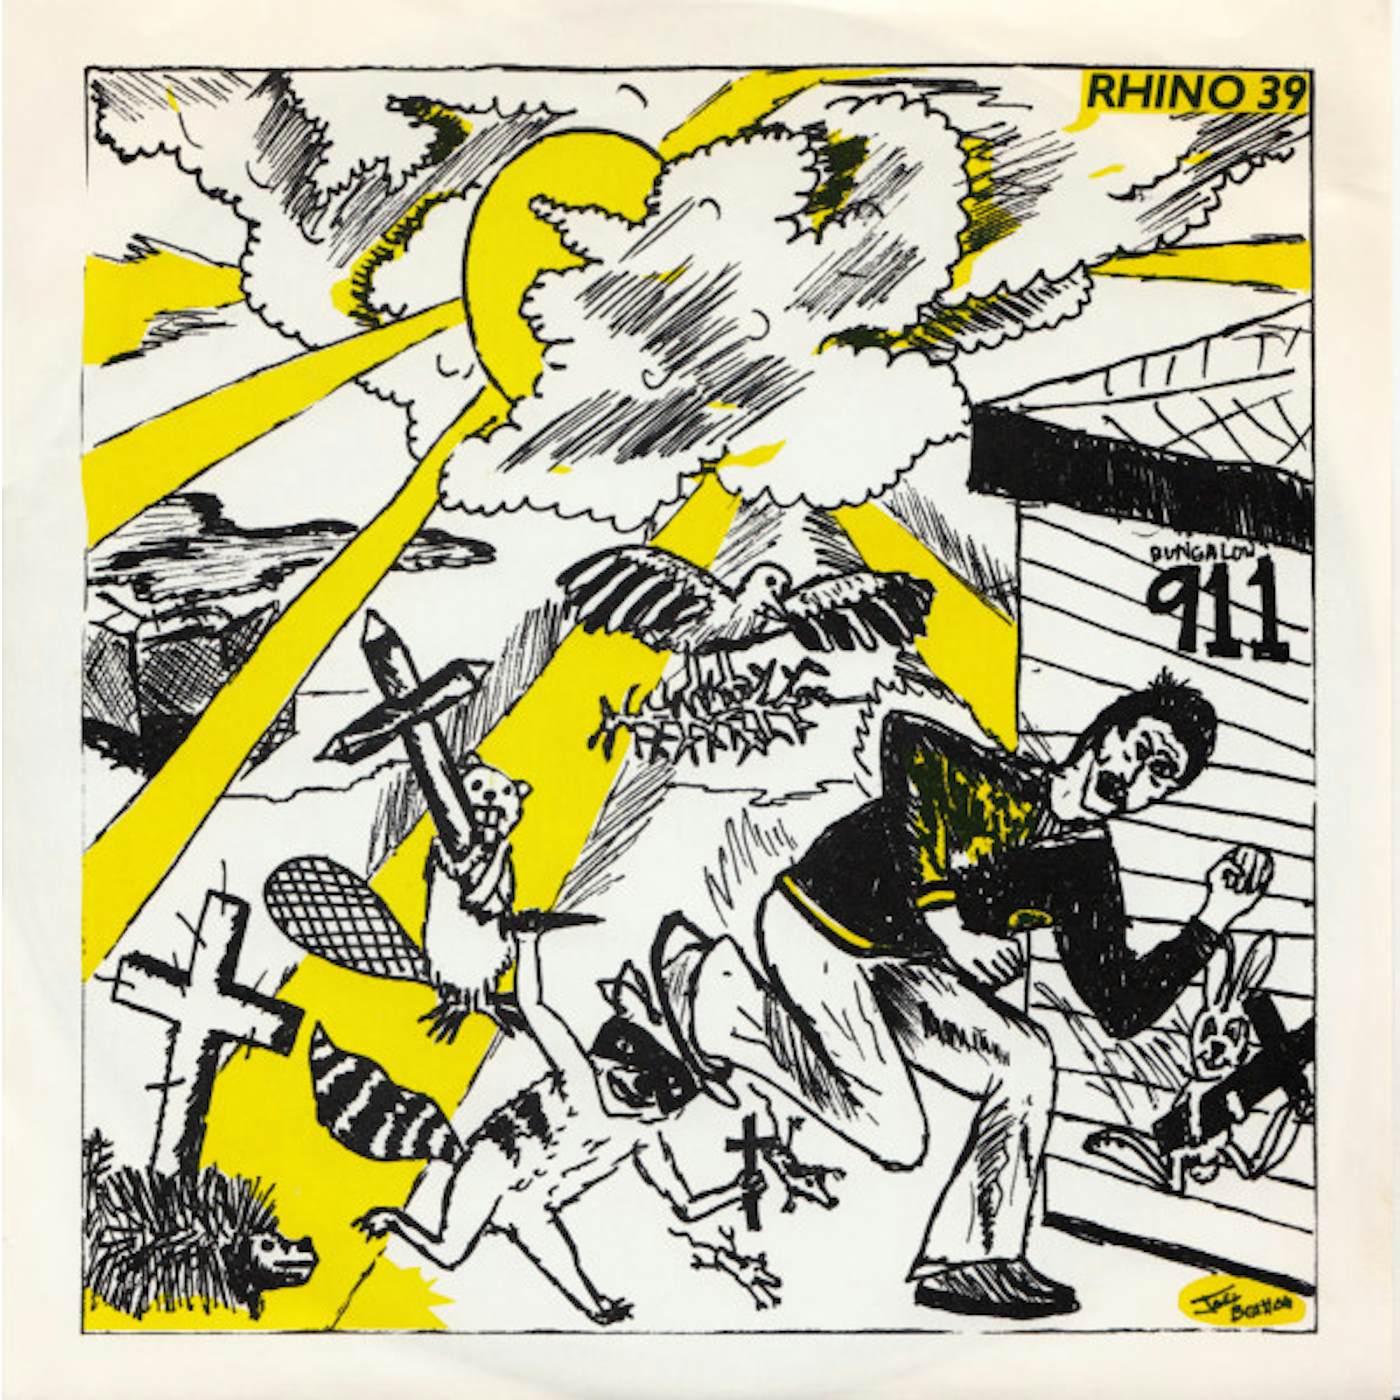 Rhino 39 Xerox/No Compromise Vinyl Record